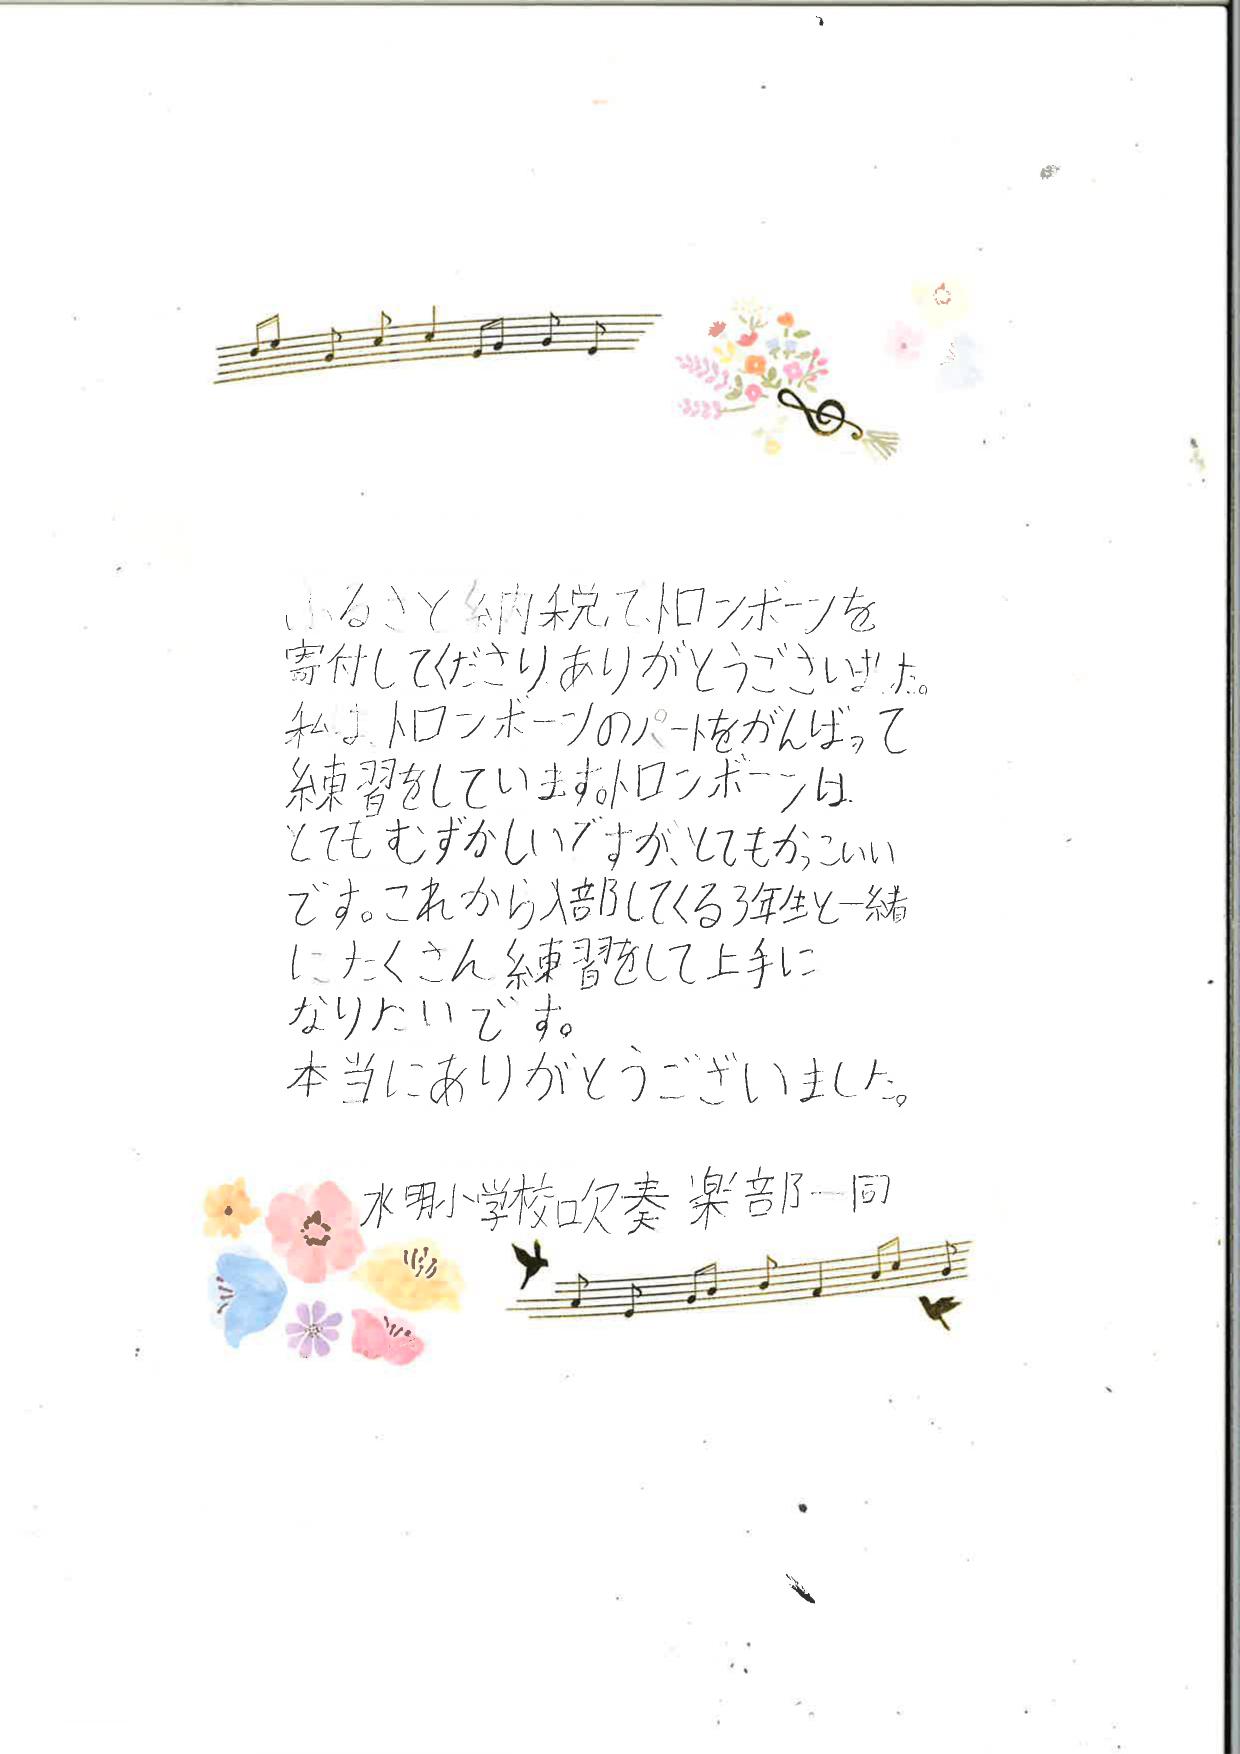 感謝の手紙_page-0001.jpg